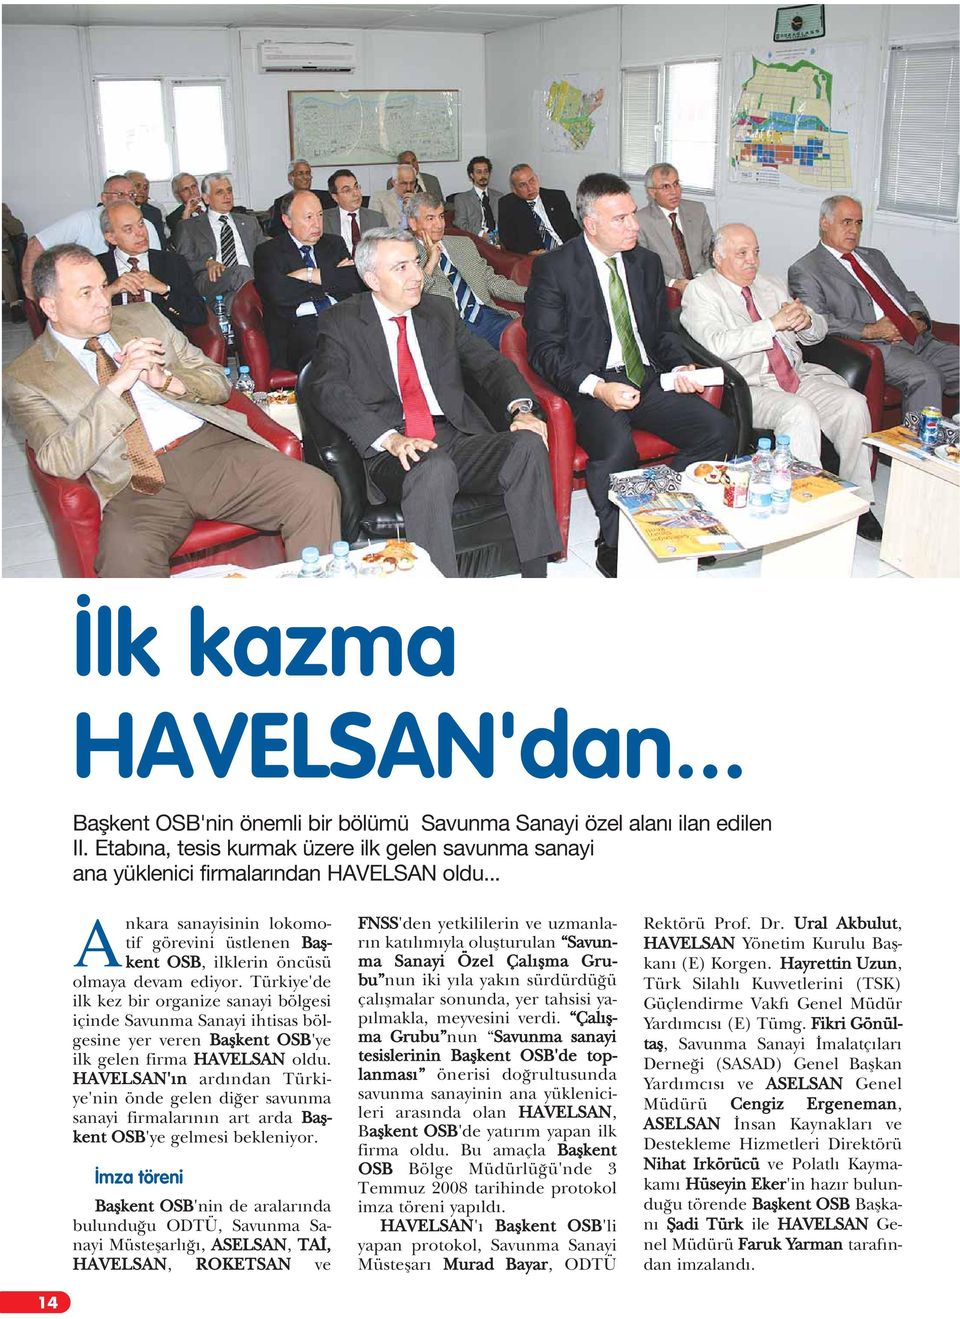 Türkiye'de ilk kez bir organize sanayi bölgesi içinde Savunma Sanayi ihtisas bölgesine yer veren Baflkent OSB'ye ilk gelen firma HAVELSAN oldu.